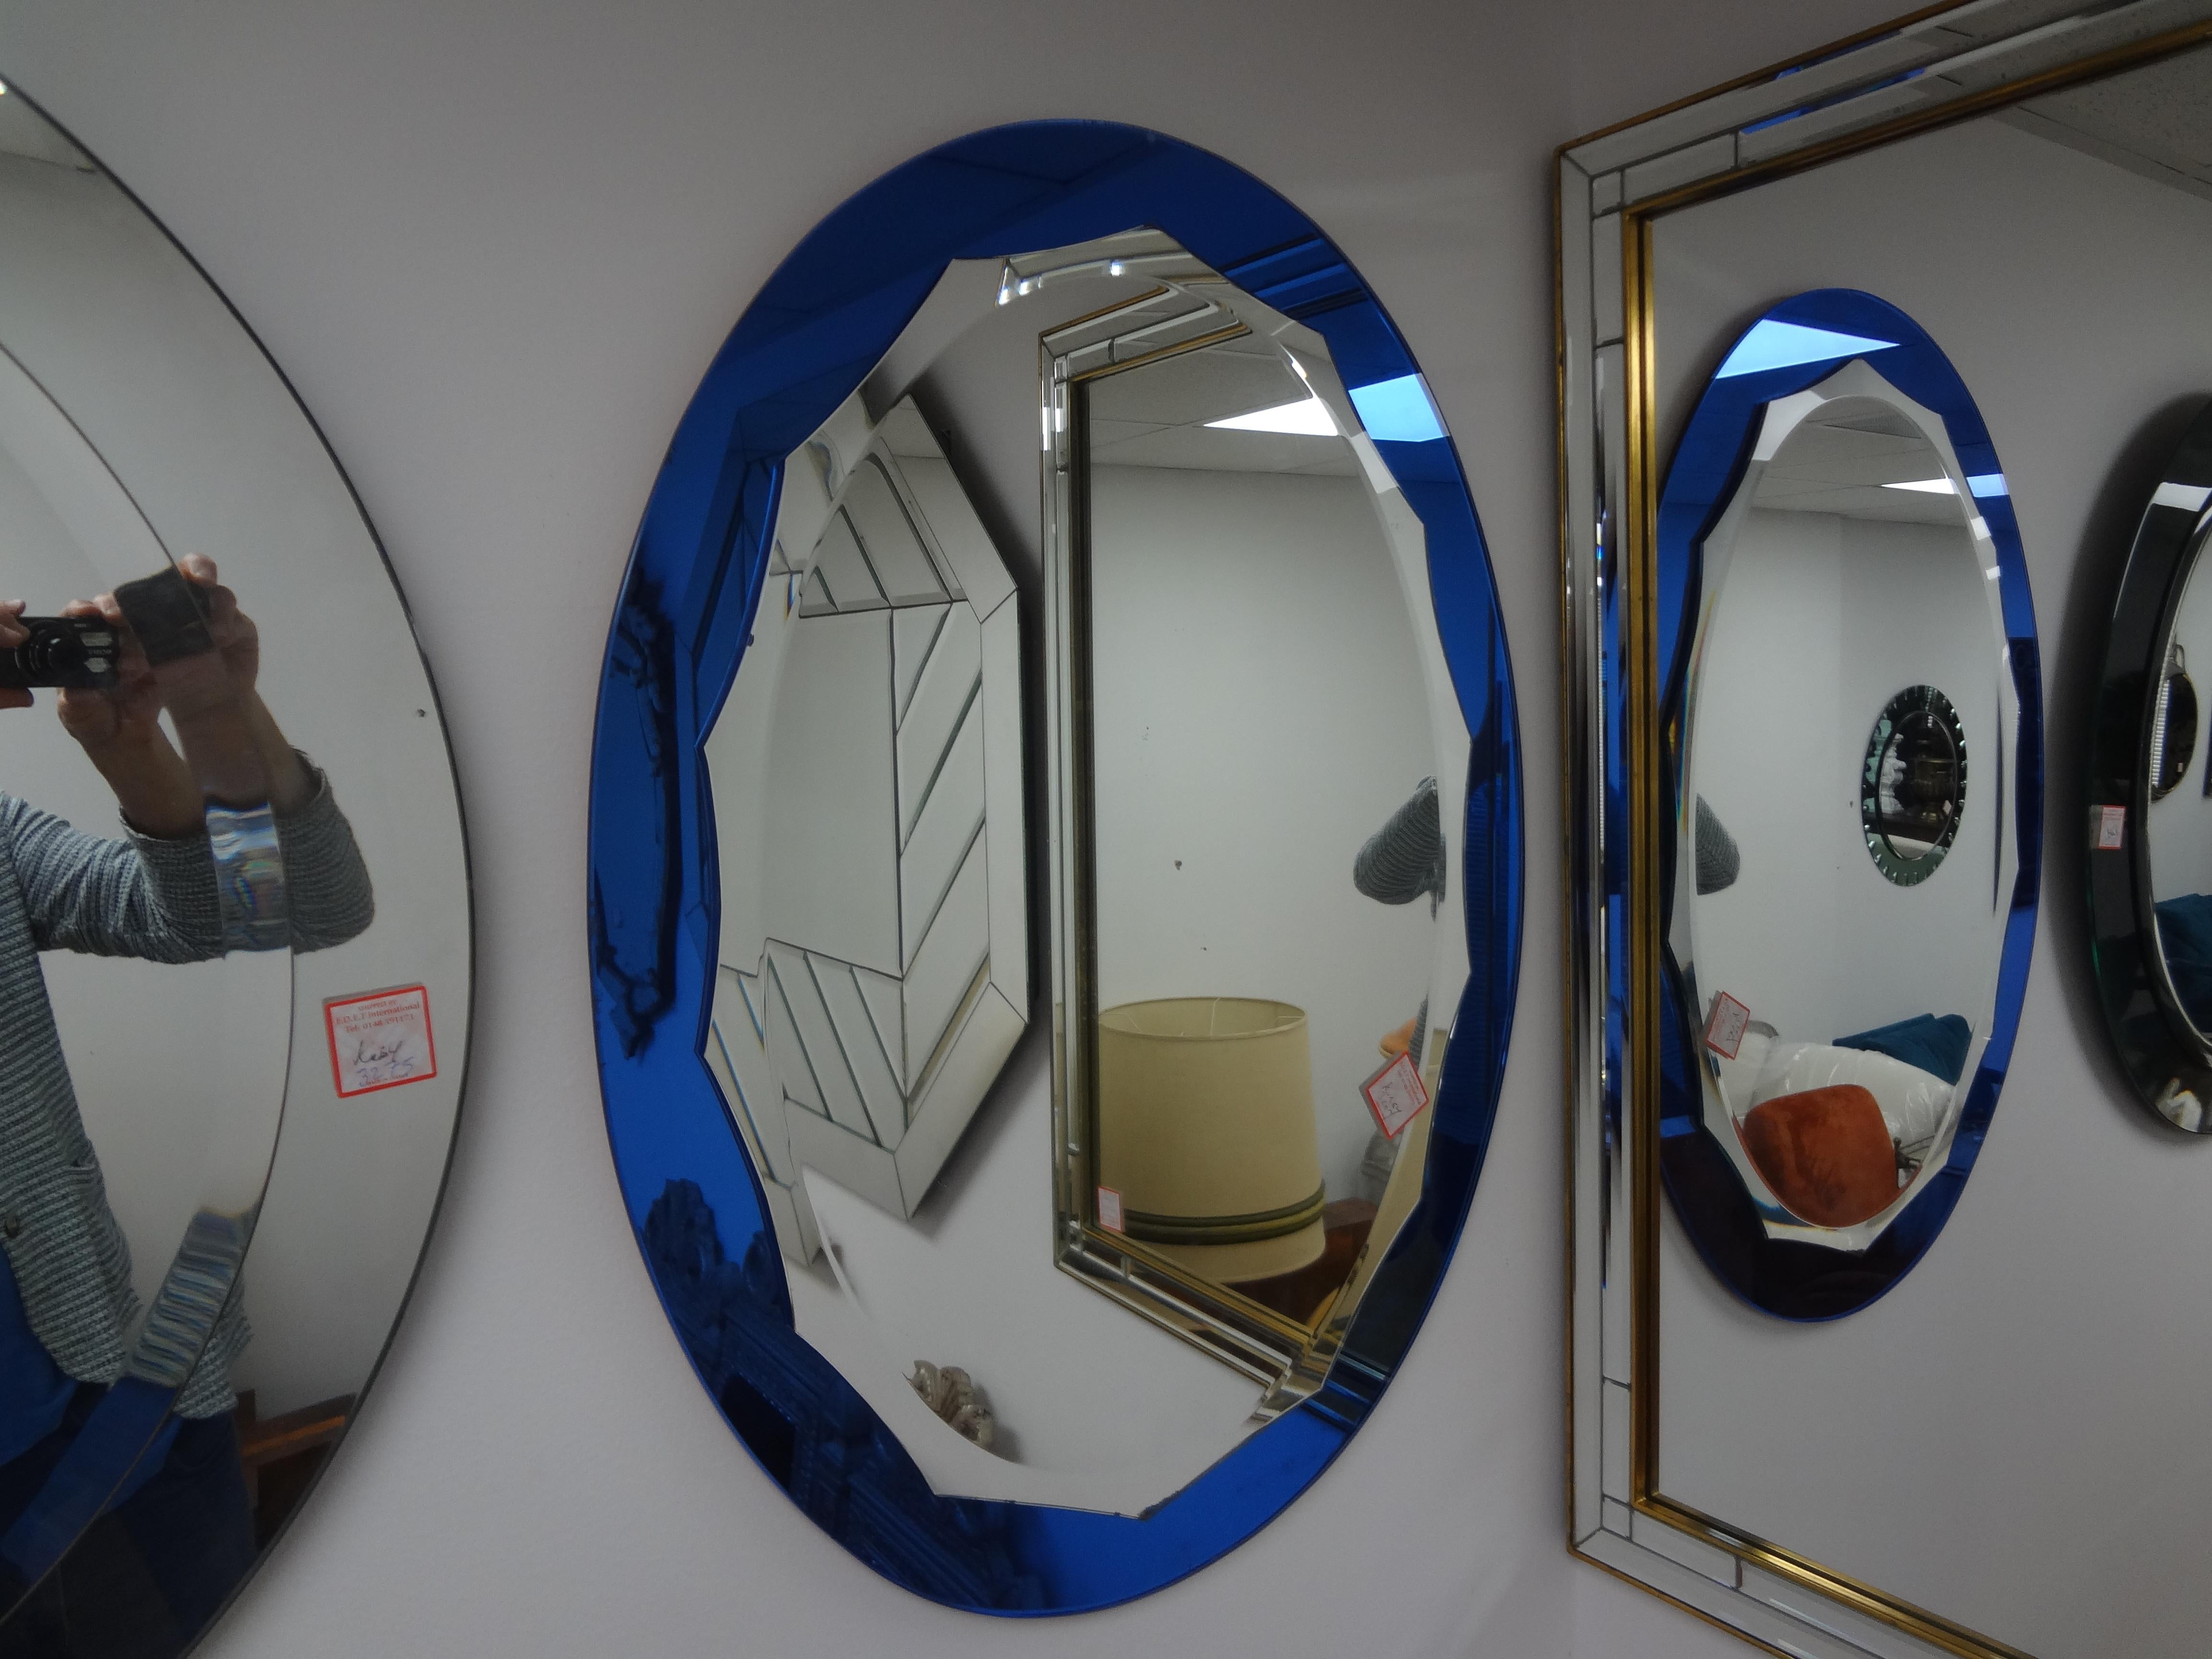  Italian Modern Blue Fontana Arte Style Beveled  Miroir .
Cet élégant miroir ovale italien du milieu du siècle a un extérieur en miroir bleu cobalt et un intérieur en biseau argenté festonné.
Un superbe design moderne italien, parfait pour une salle